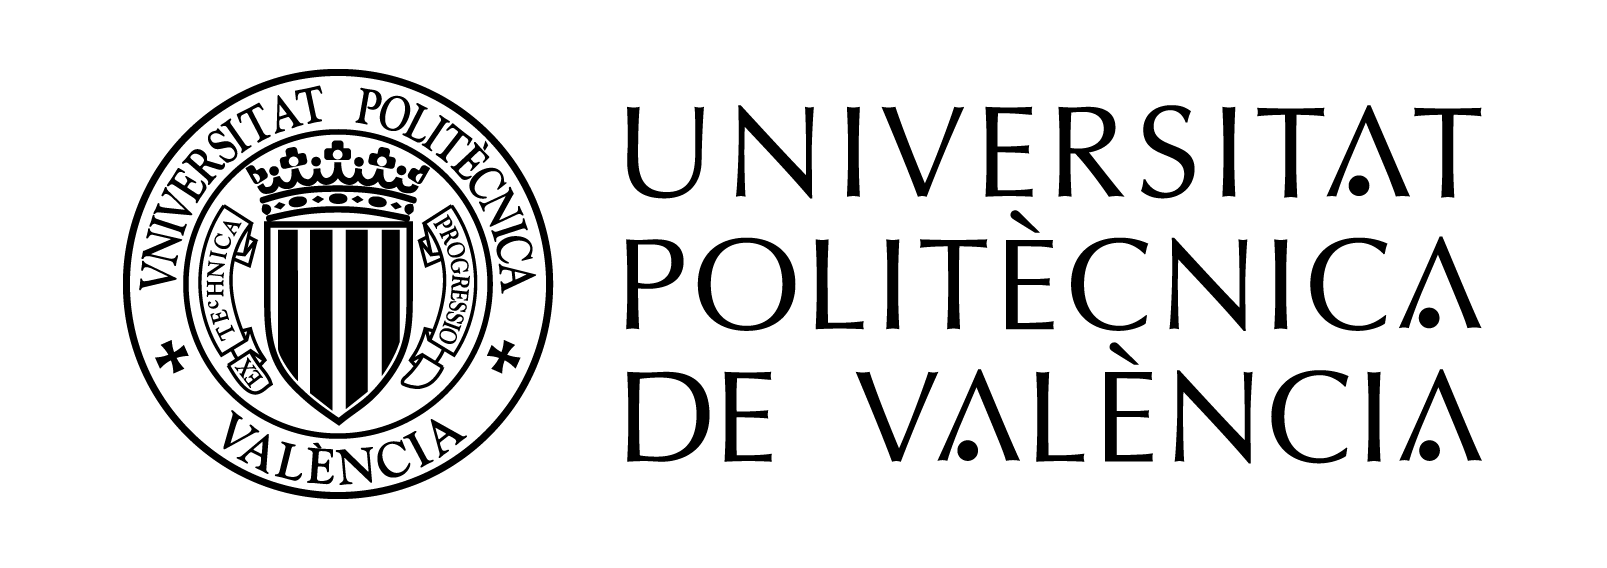 logo-upv